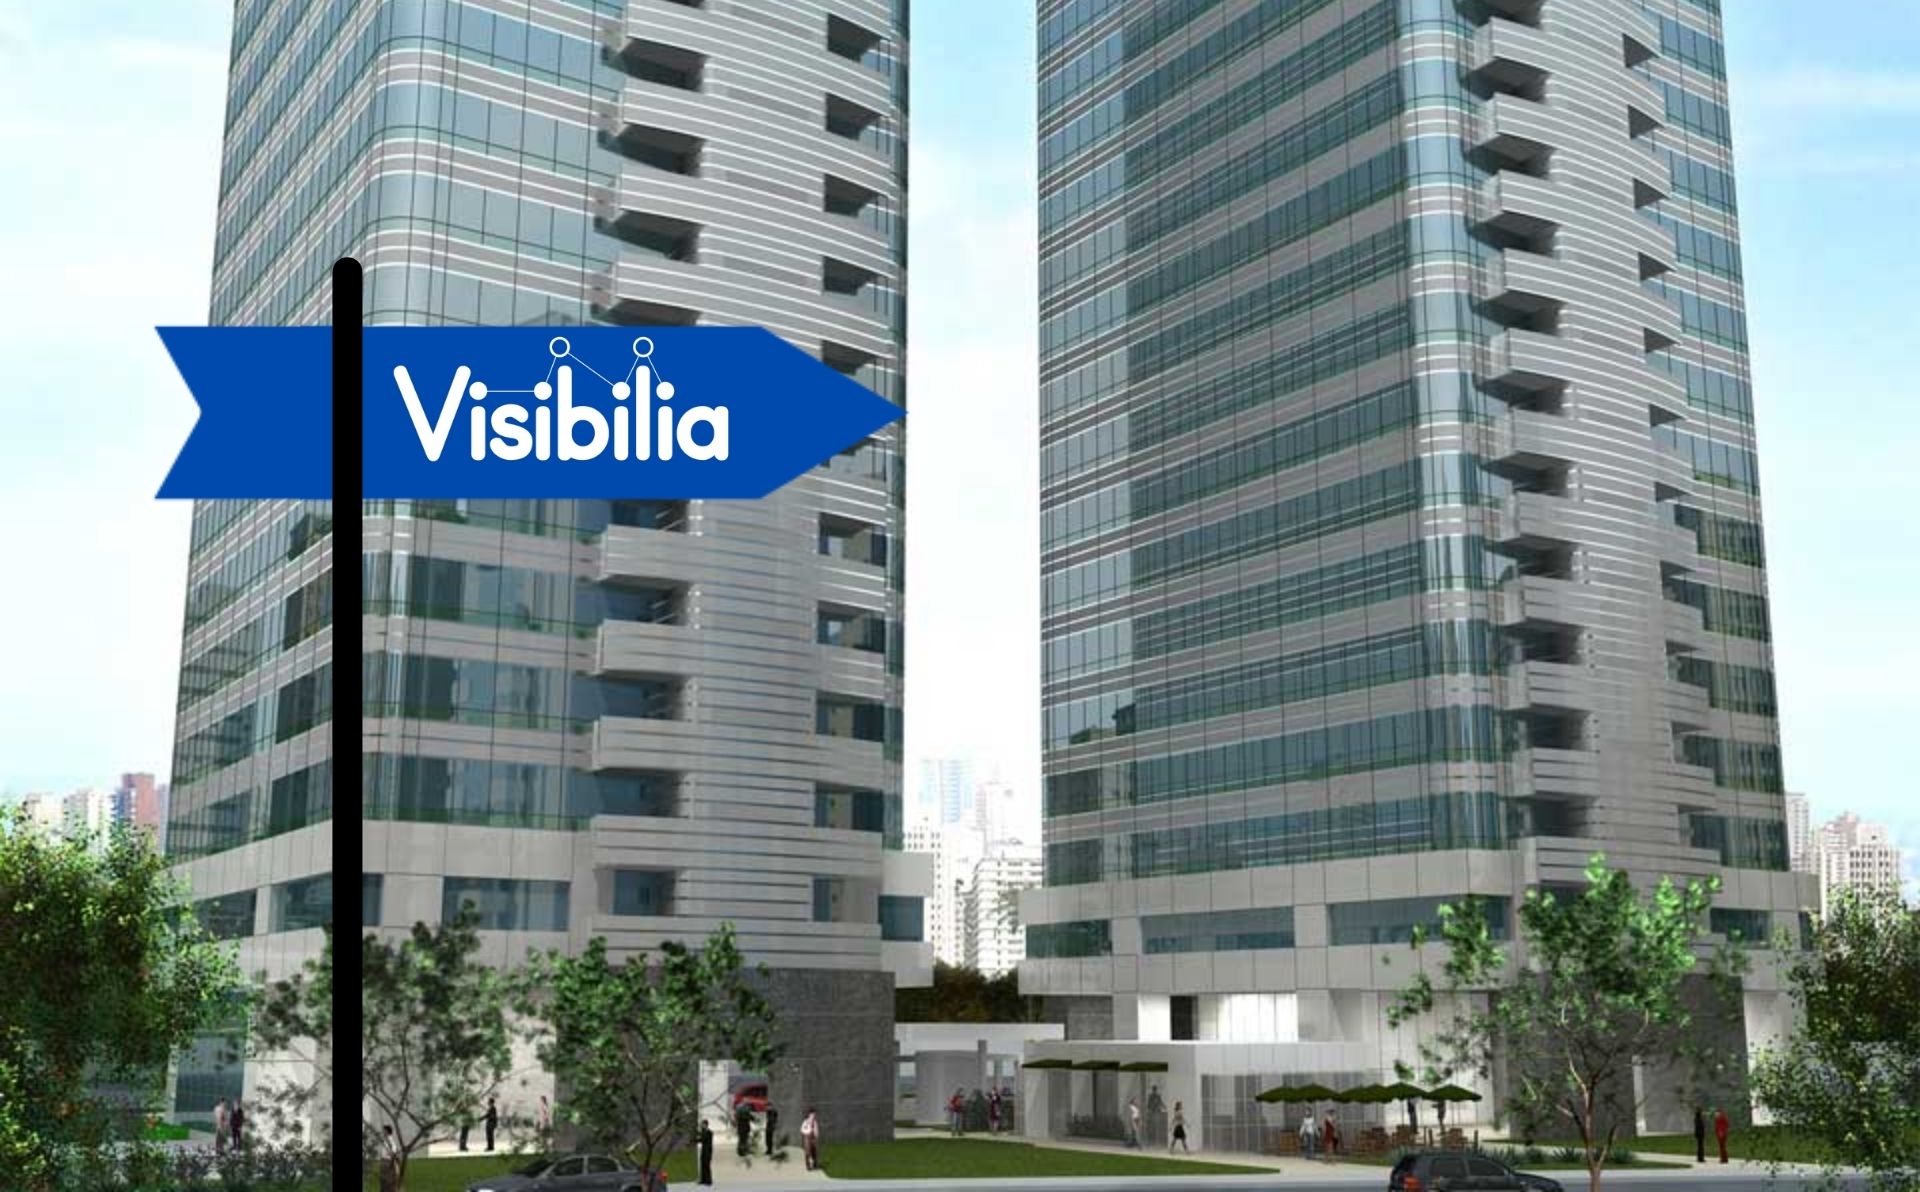 Imagem do novo prédio da Visibilia, com, na frente, uma placa animada preta e azul com o logo da empresa.